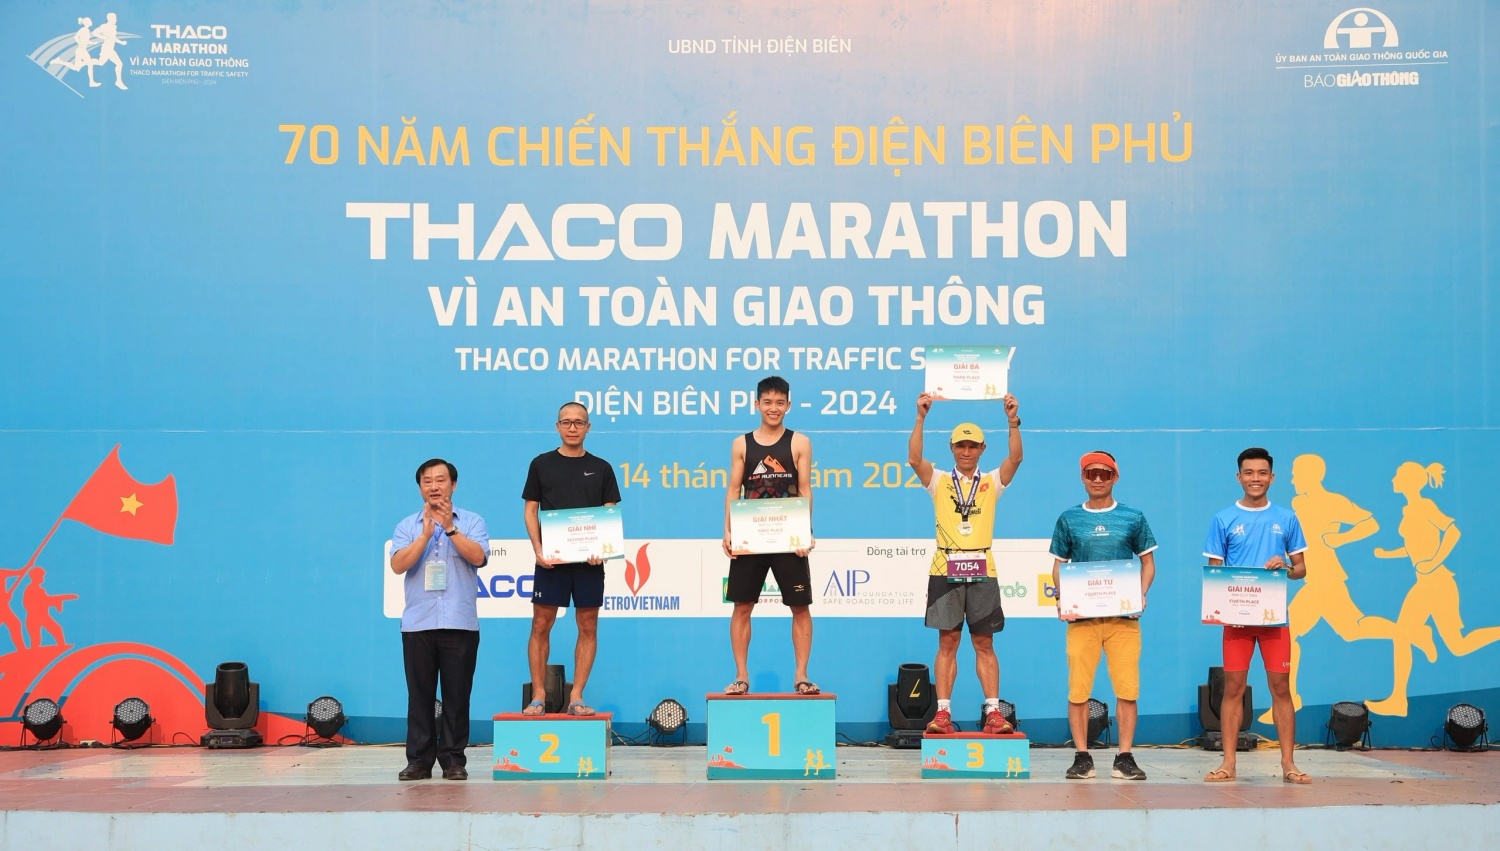 Petrovietnam đồng hành cùng giải chạy THACO Marathon Vì an toàn giao thông - Điện Biên Phủ 2024